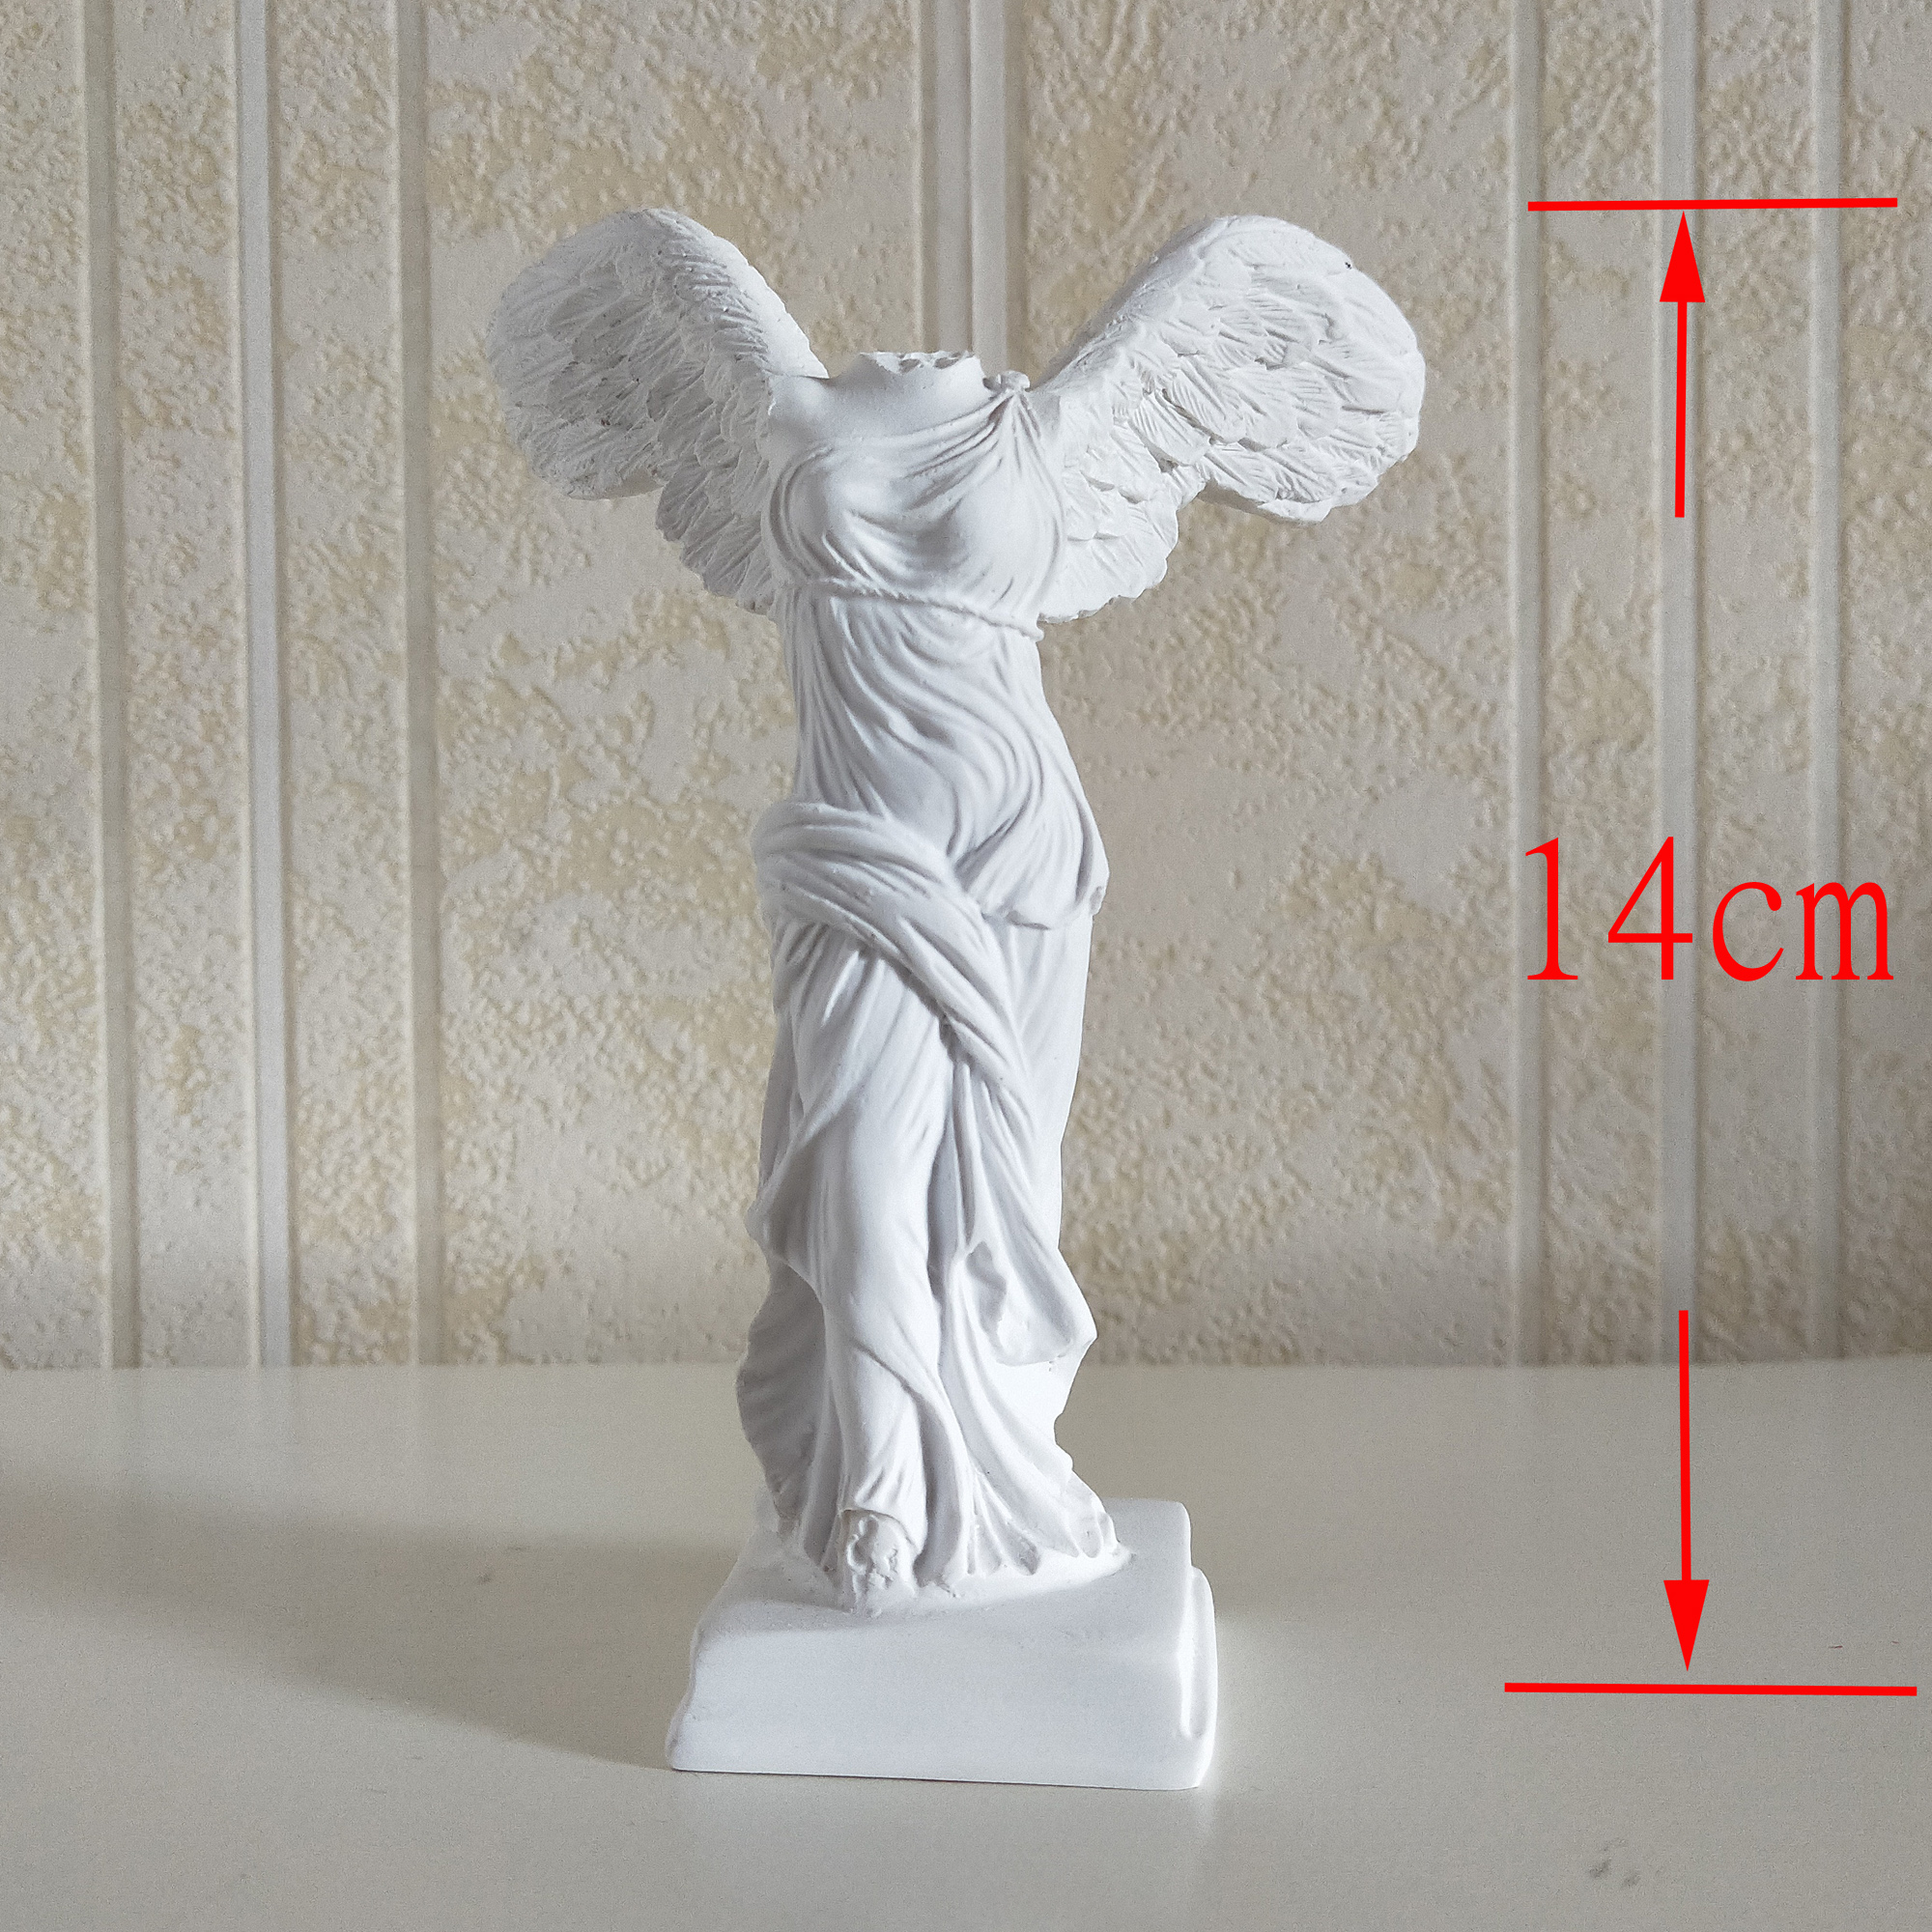 14cm高树脂仿石膏胜利女神雕像雕塑全身像北欧式人物摆件桌面摆设